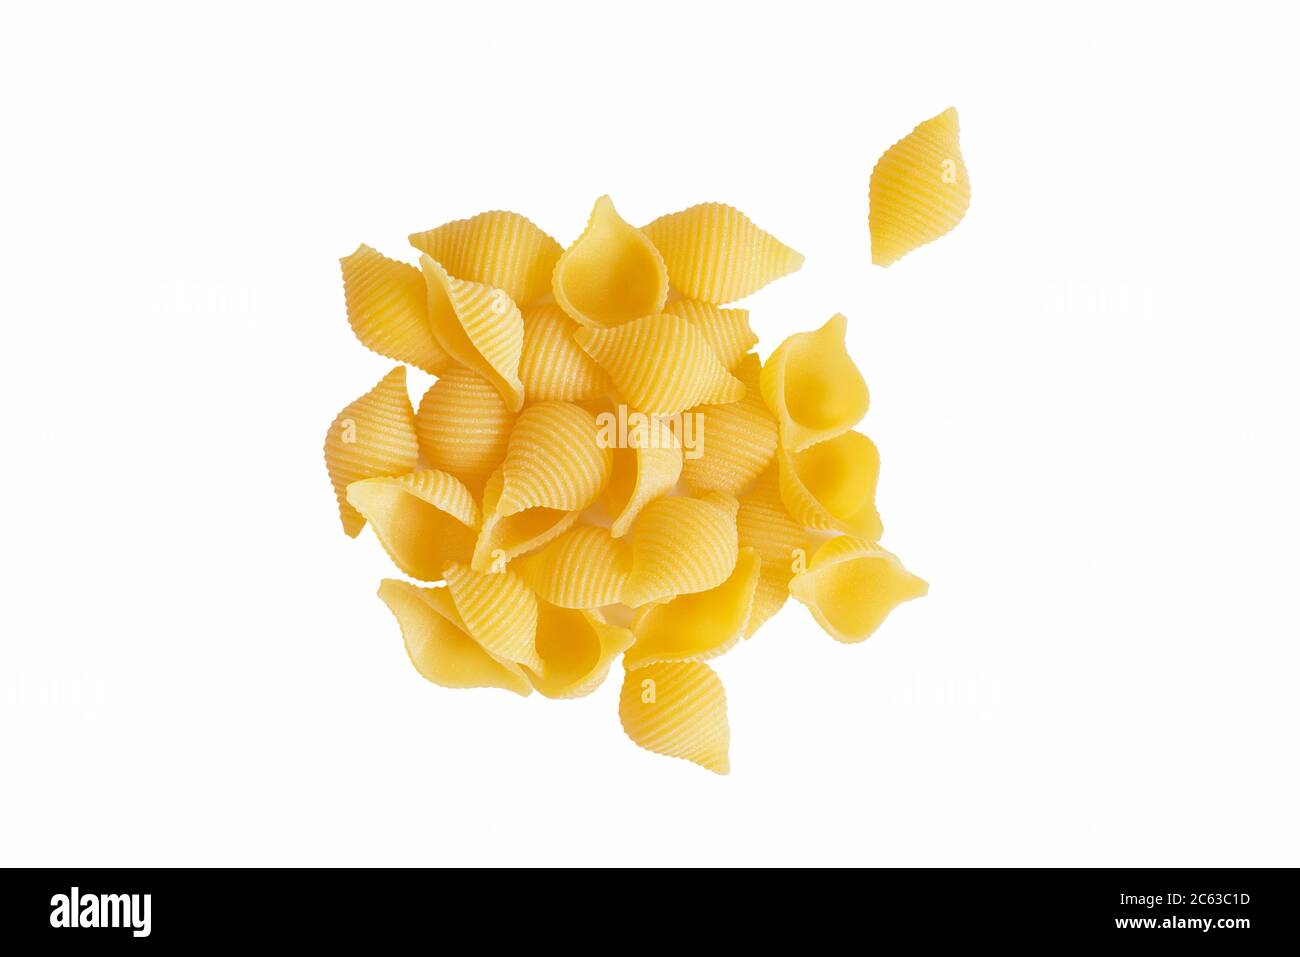 Rohe Bio-Shell-Pasta. Eine Menge traditioneller italienischer Muschelgerichte, isoliert auf weißem Bachboden. Italienische Küche. Unbekochte getrocknete Conchiglie Draufsicht Stockfoto